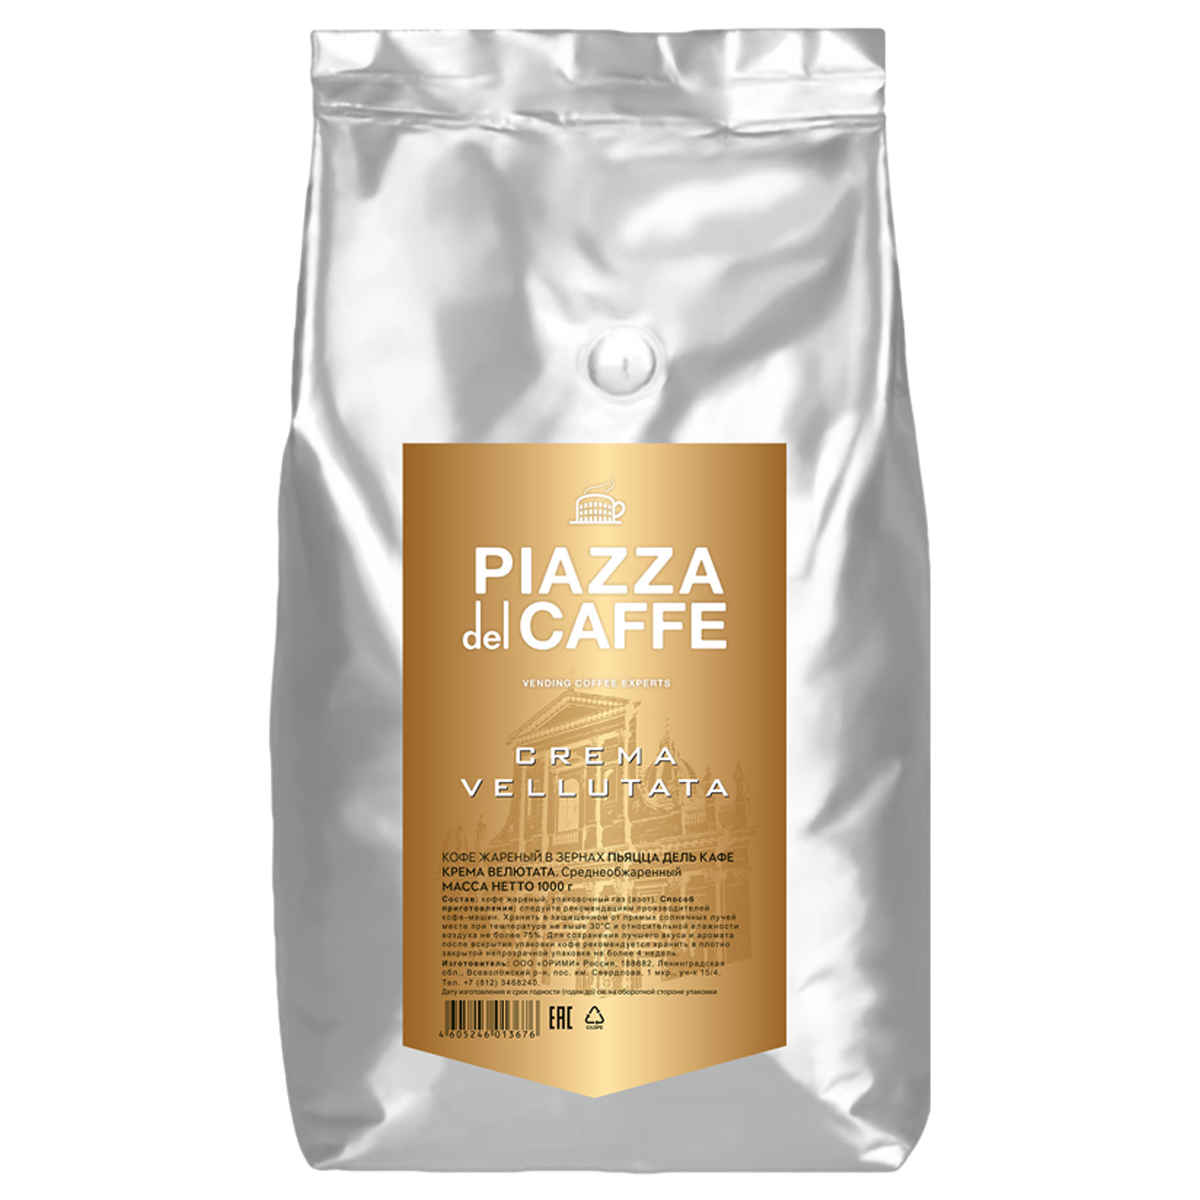 Кофе в зернах Piazza del caffe "Crema Vellutata", вакуумный пакет, 1кг